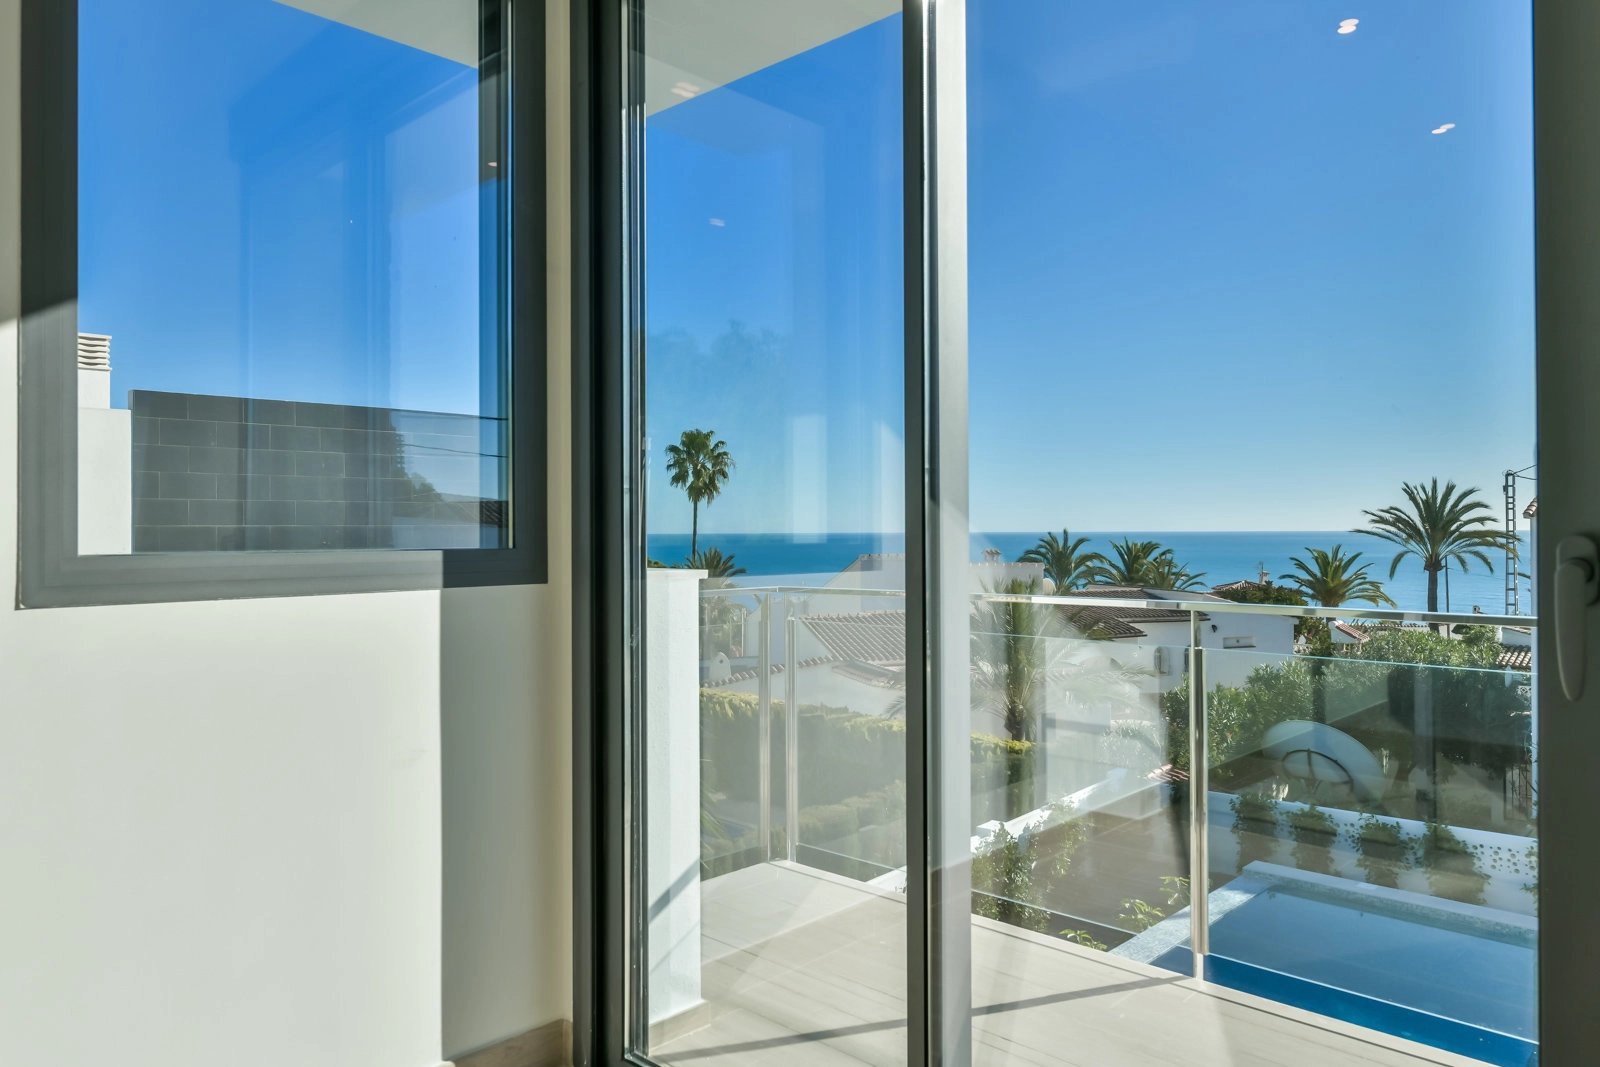 Aantrekkelijke moderne woning met prachtig uitzicht op zee